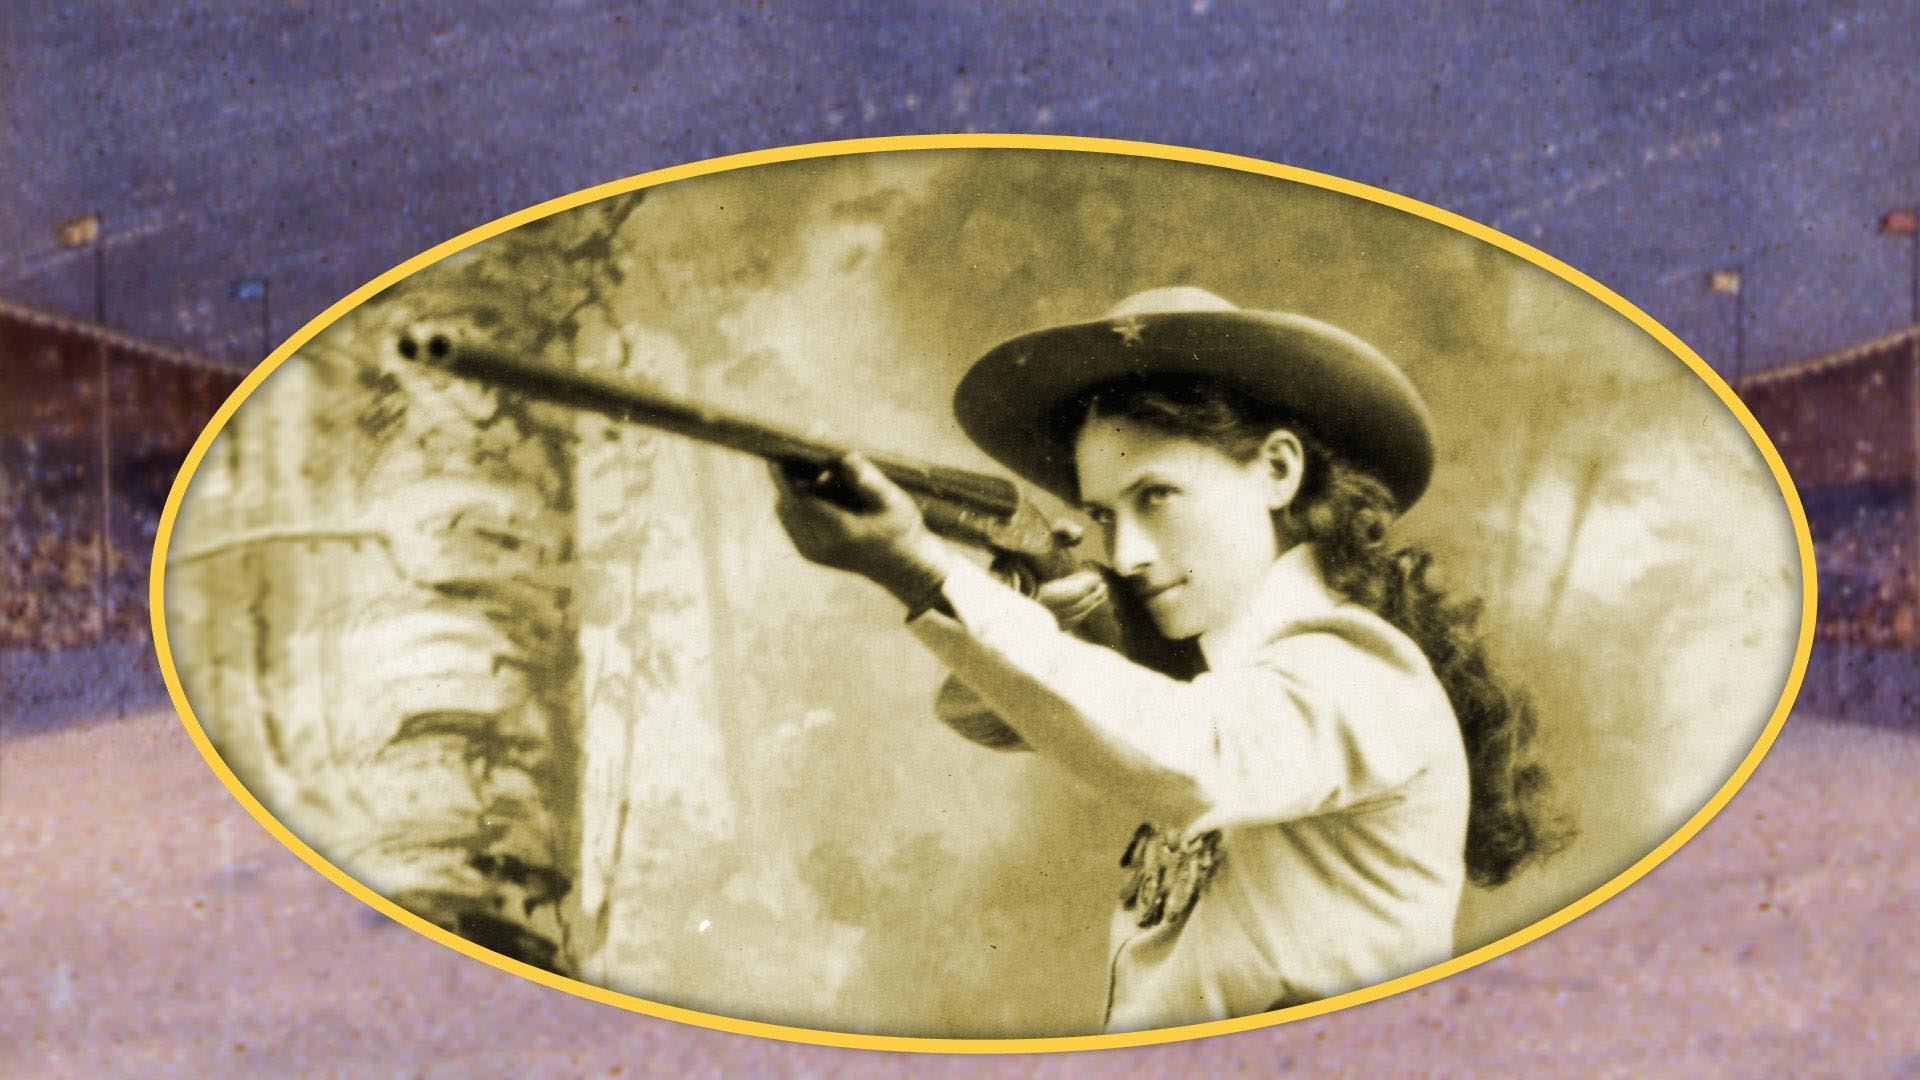 Annie Oakley shooting a rifle.